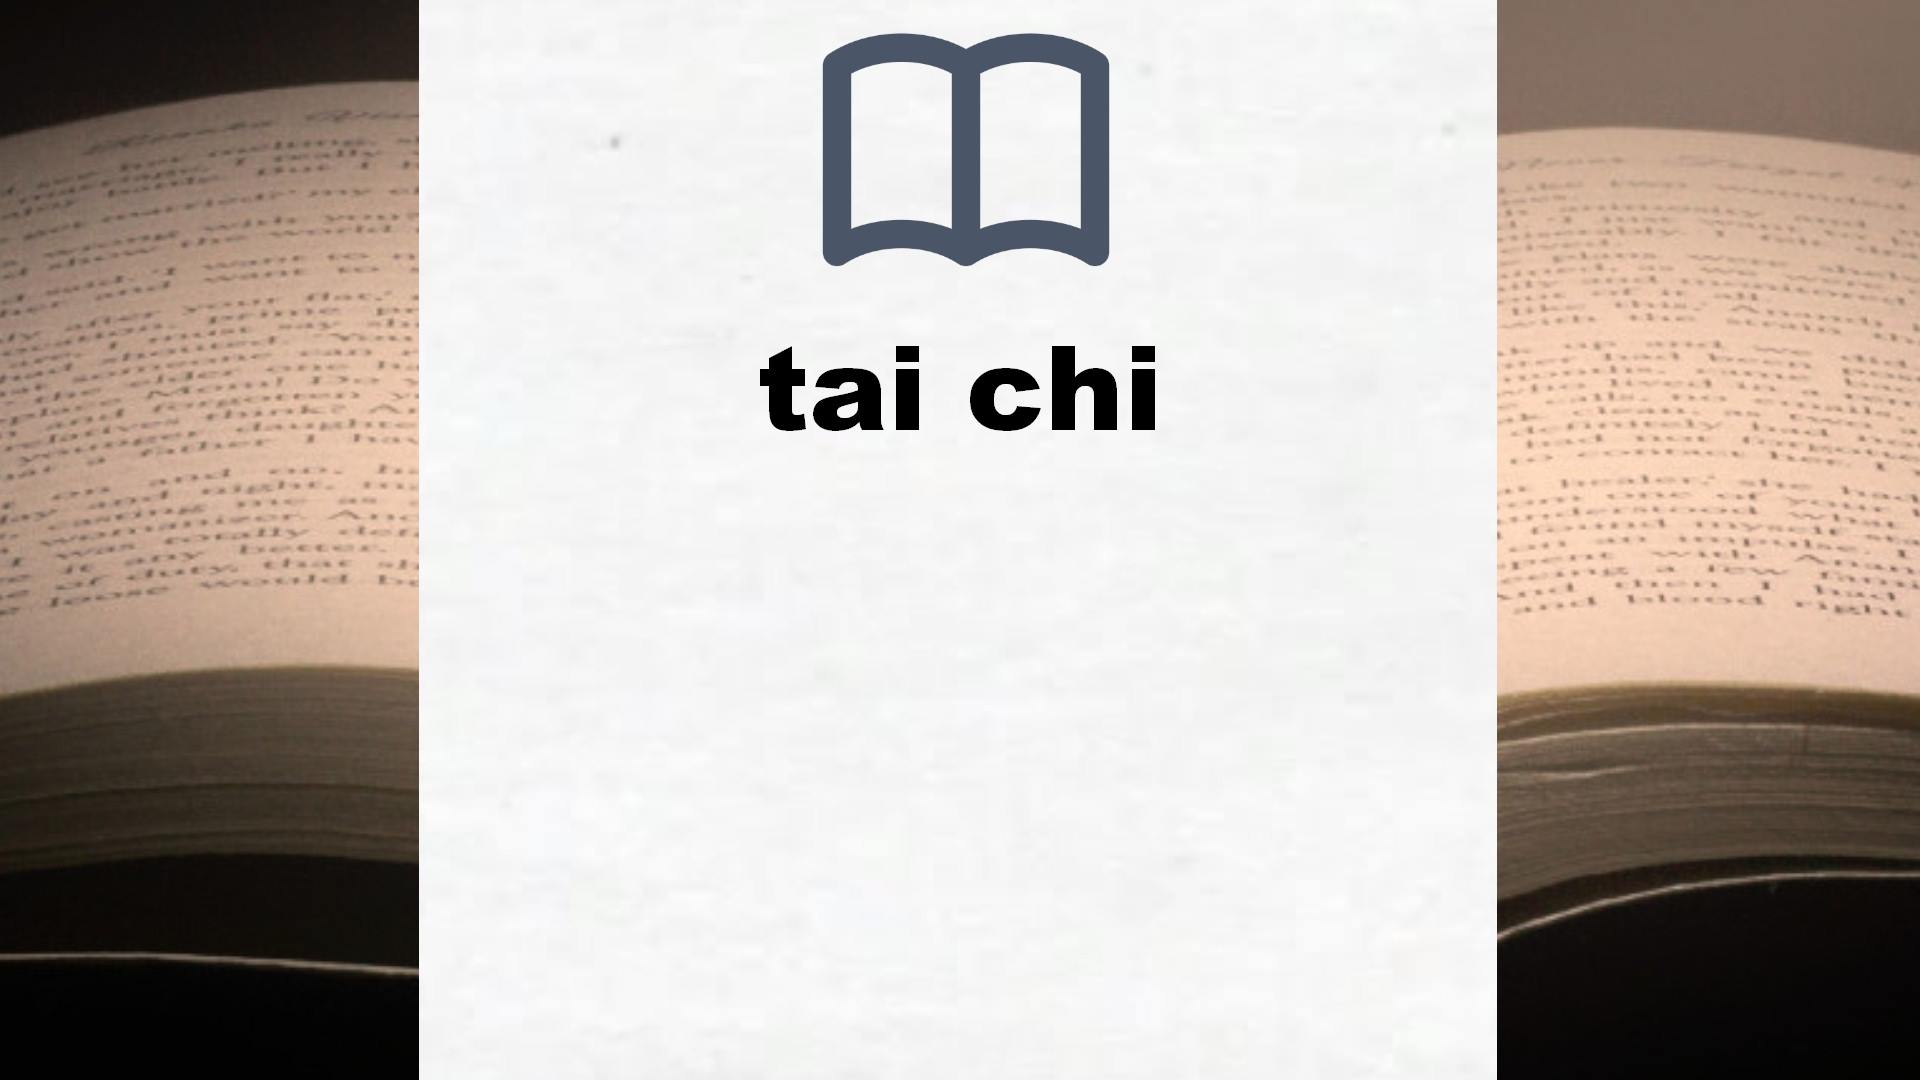 Libros sobre tai chi